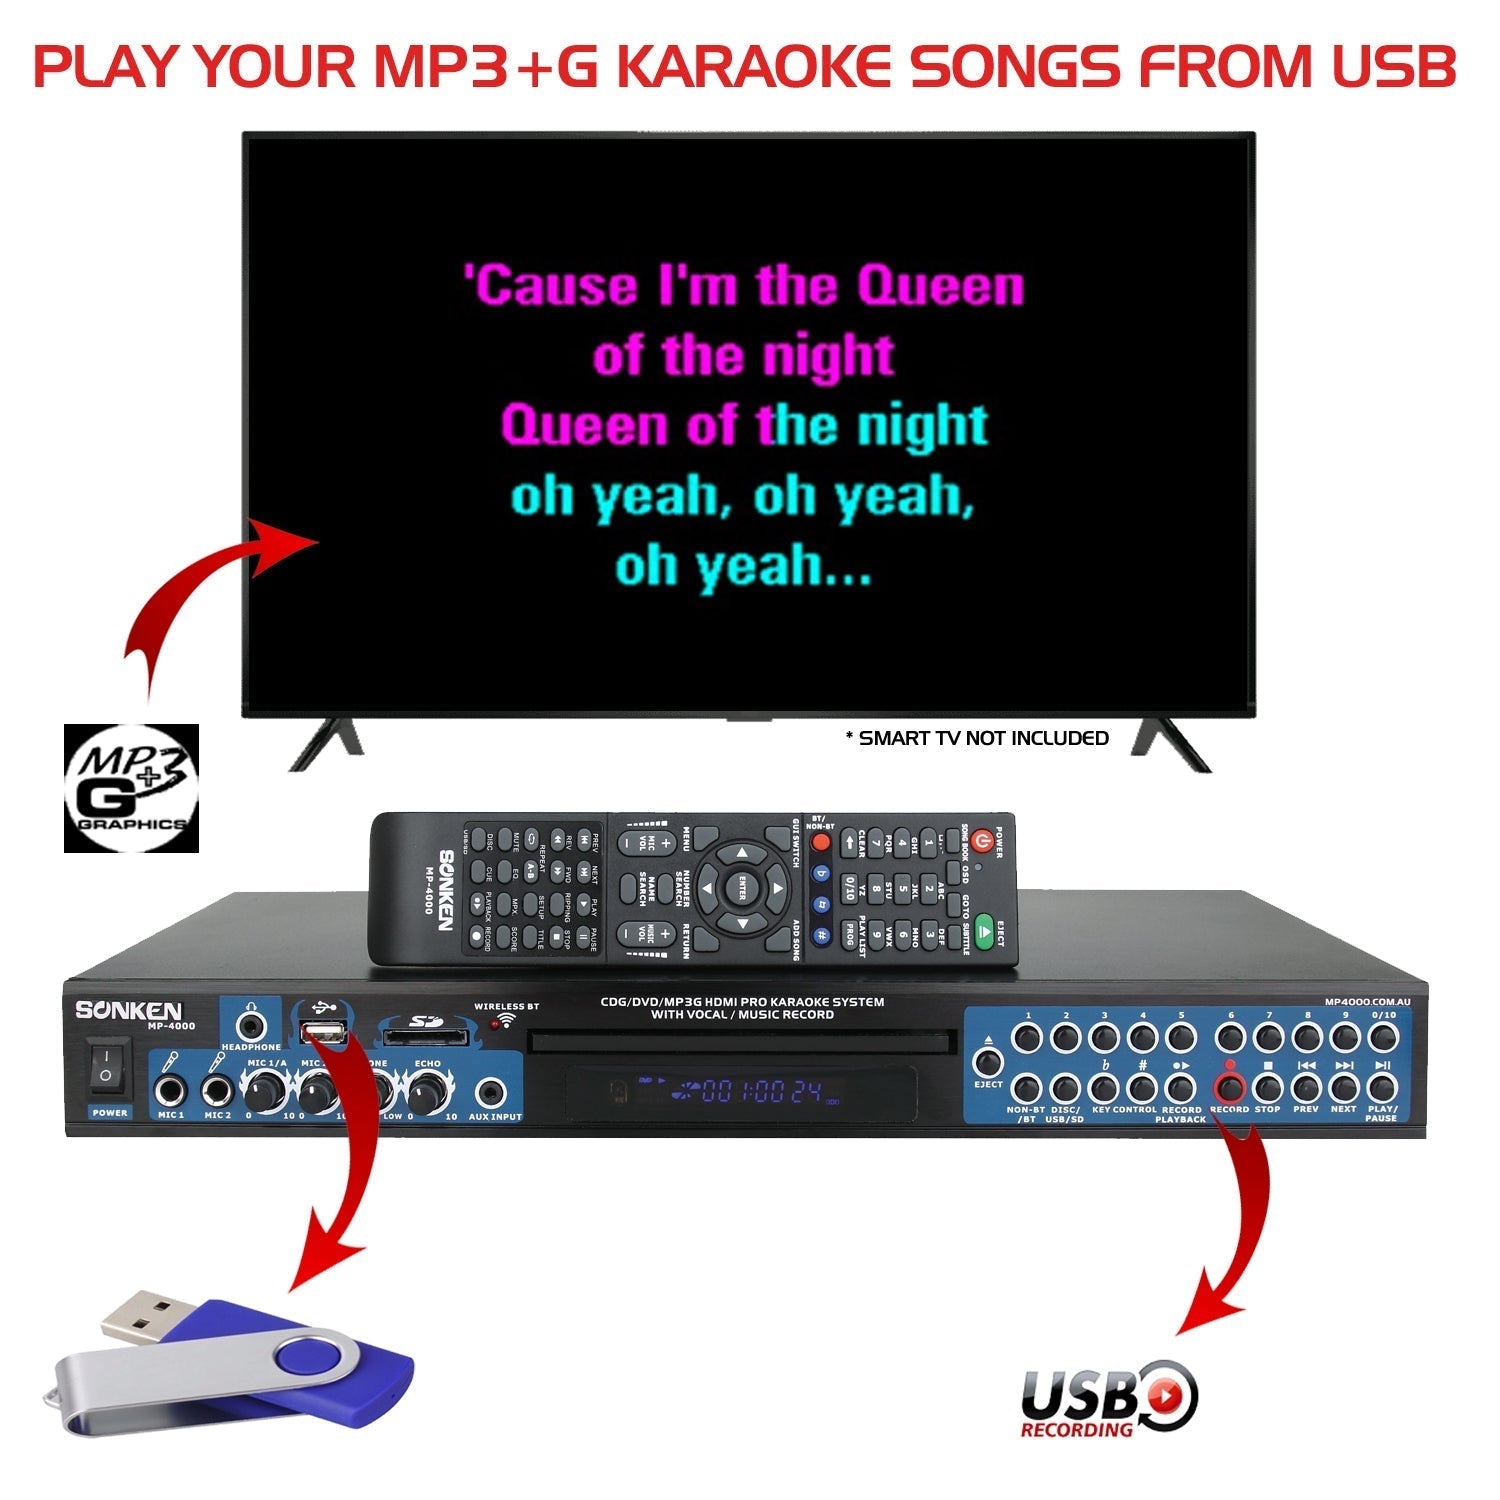 Sonken MP4000 Pro Karaoke Machine + 435 Songs from the 90's & 00's + 2 Wireless Microphones - Karaoke Home Entertainment